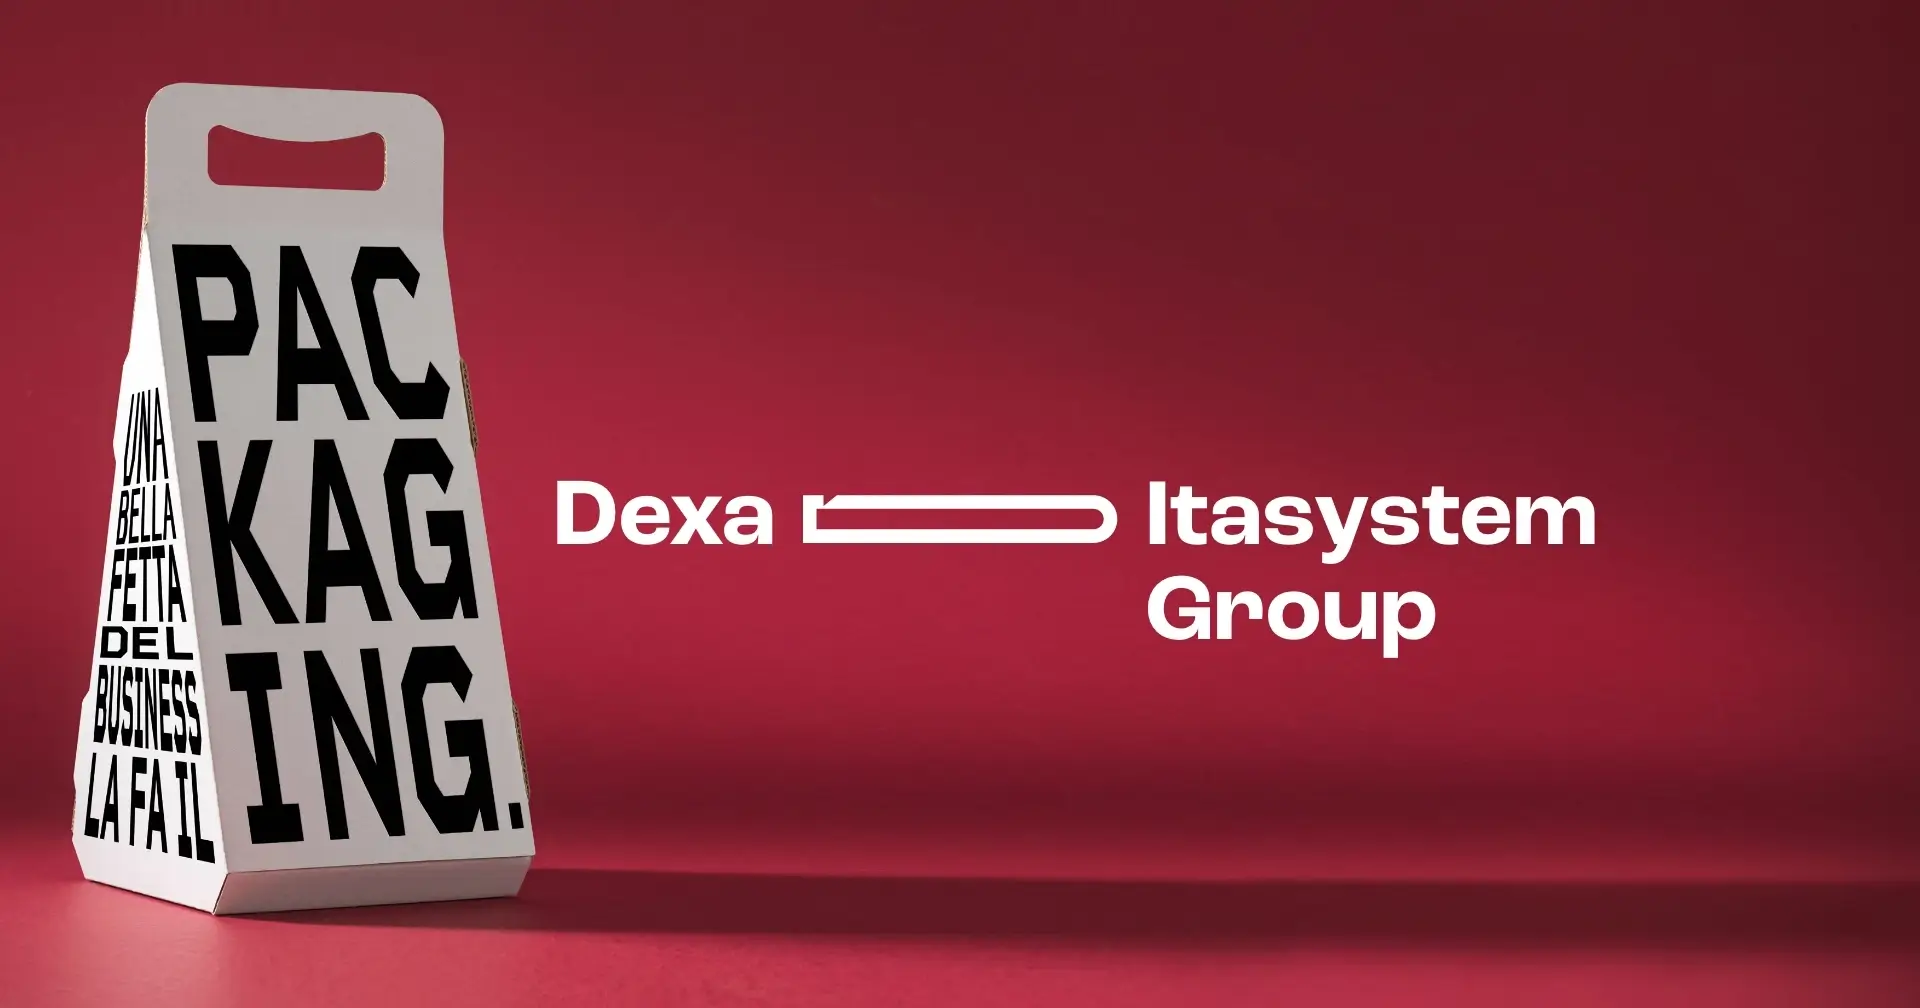 La consulenza di marketing strategico eLeva guida il rebranding del Gruppo Itasystem.